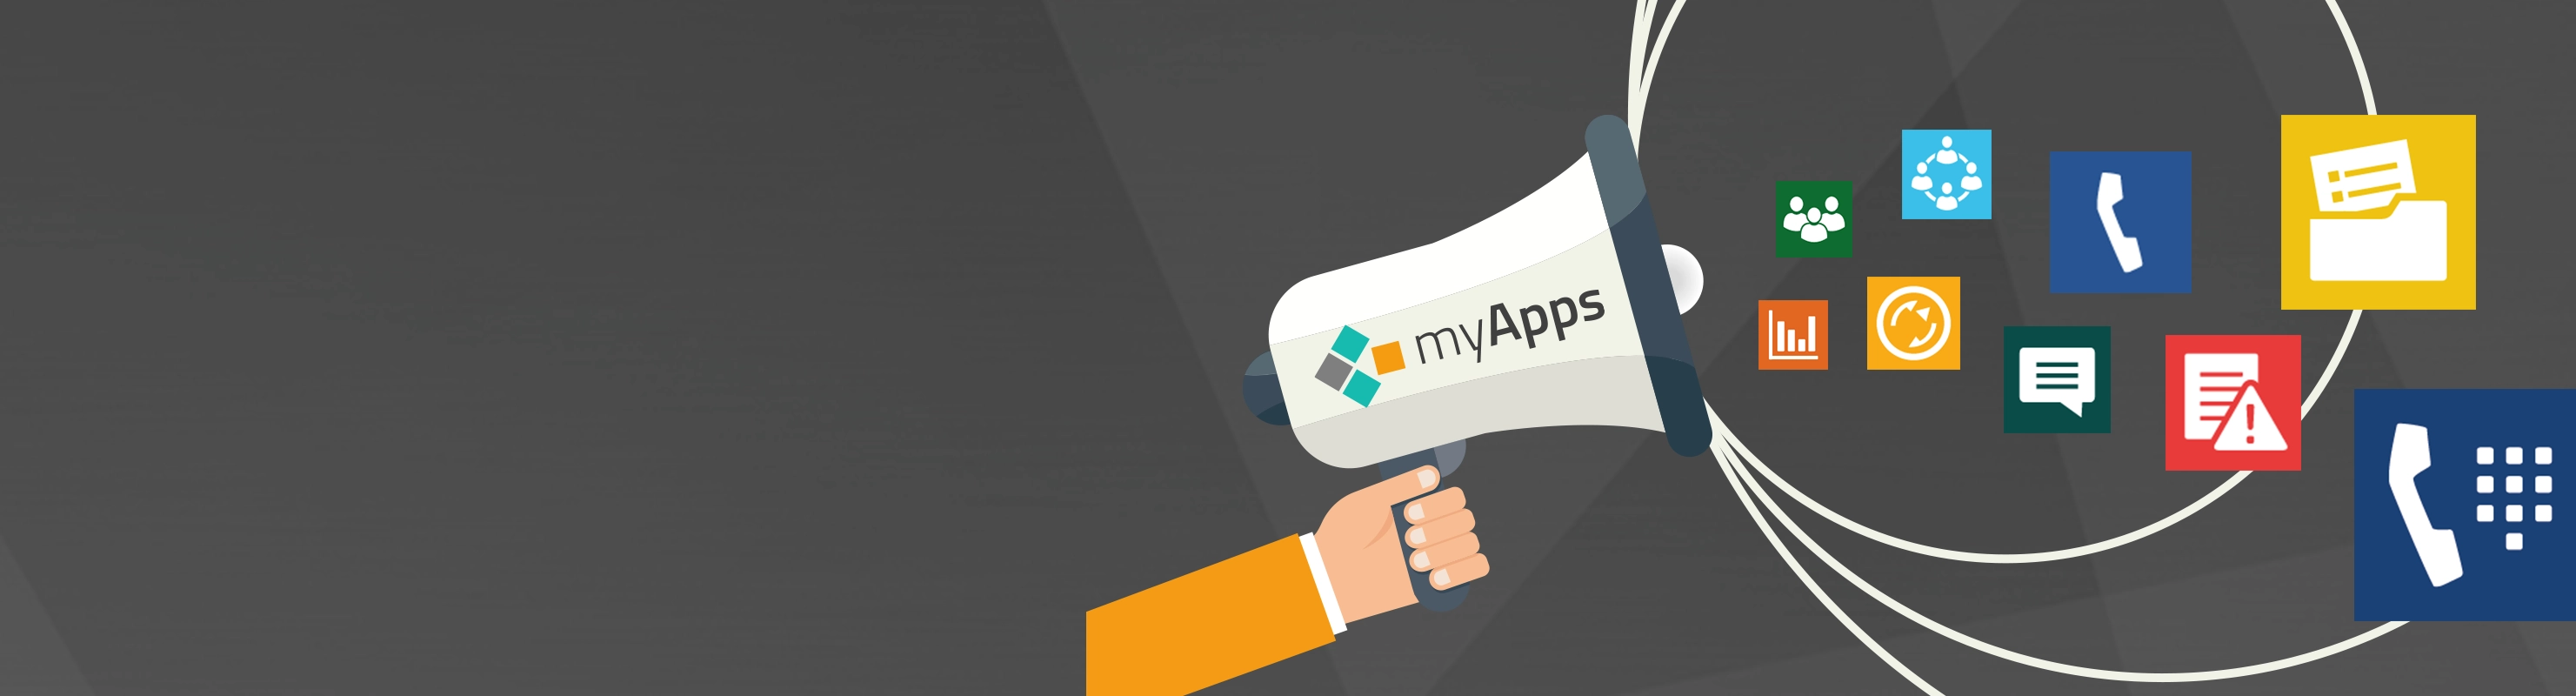 Megafon mit myApps Aufschrift, aus dem verschiedene App-Logos fliegen